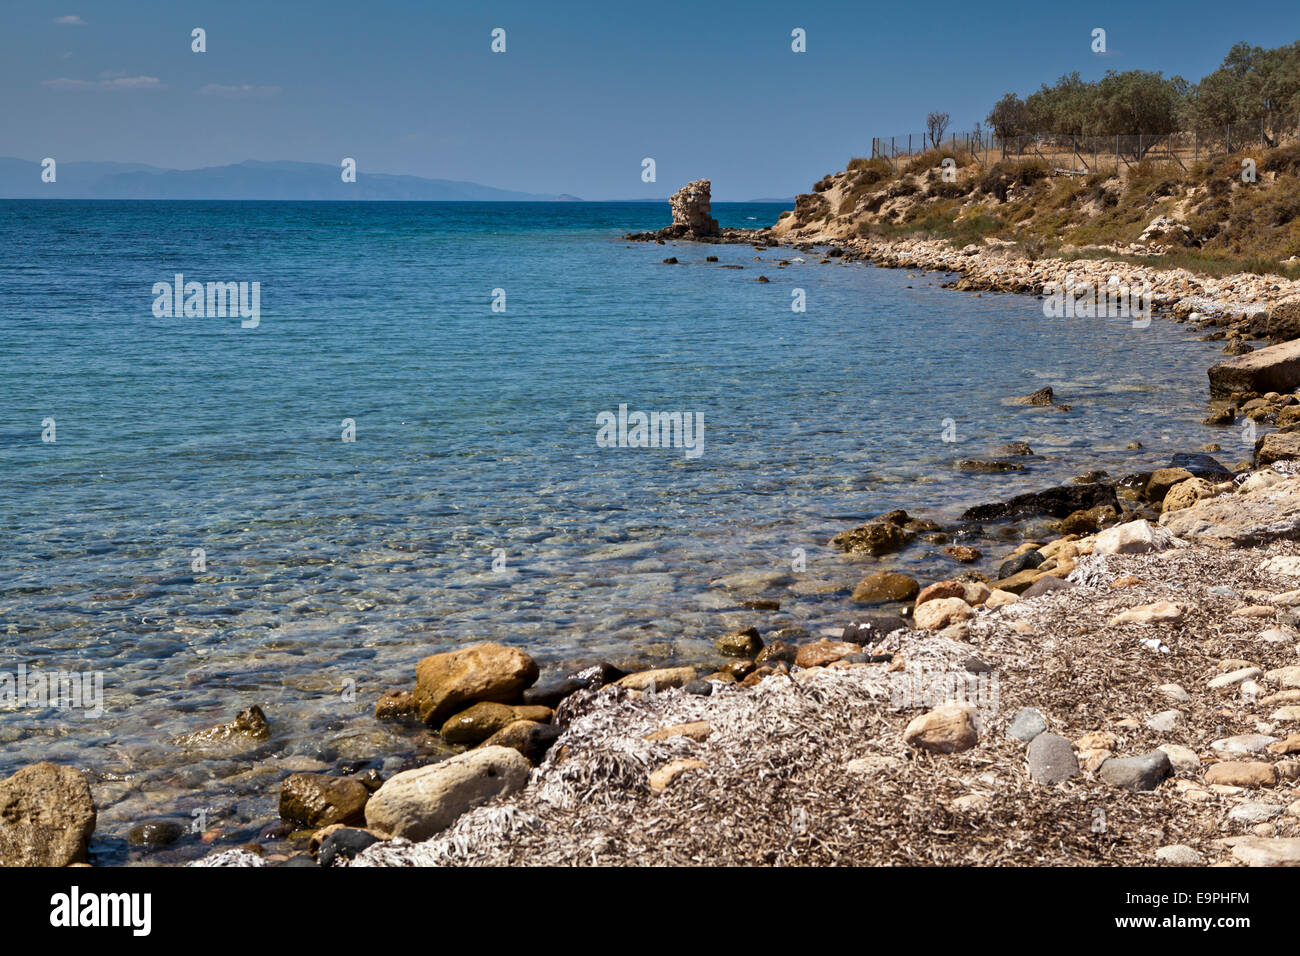 Die felsige Küste von Ägina Stadt in der griechischen Insel Aegina, Griechenland. Stockfoto